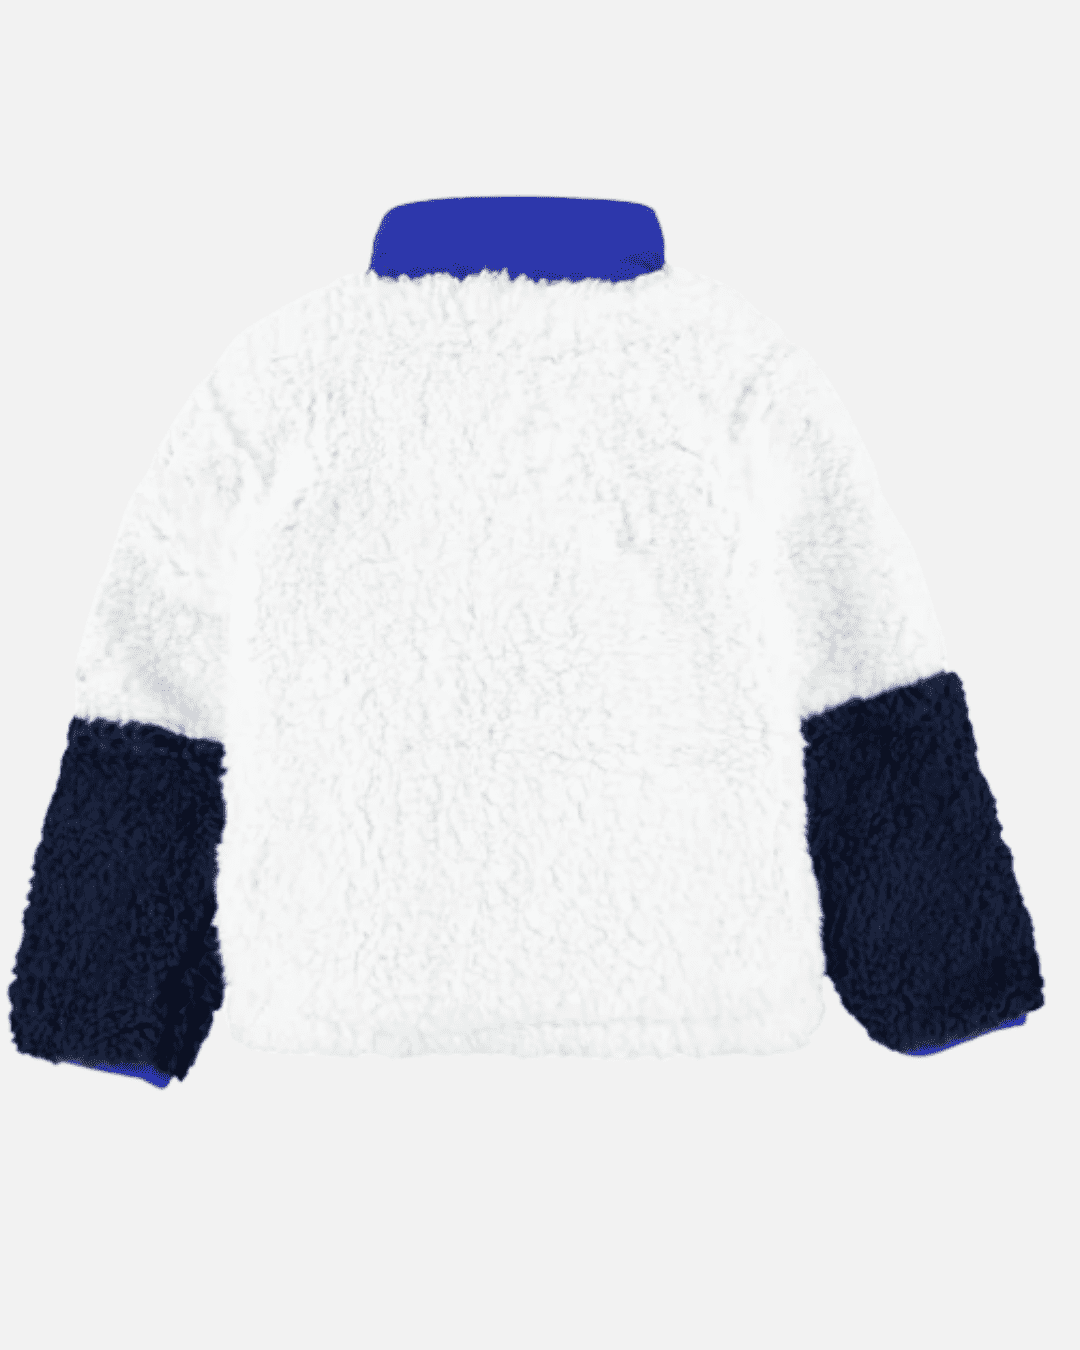 Giacca Nike Sherpa Bambini - Bianco/Blu